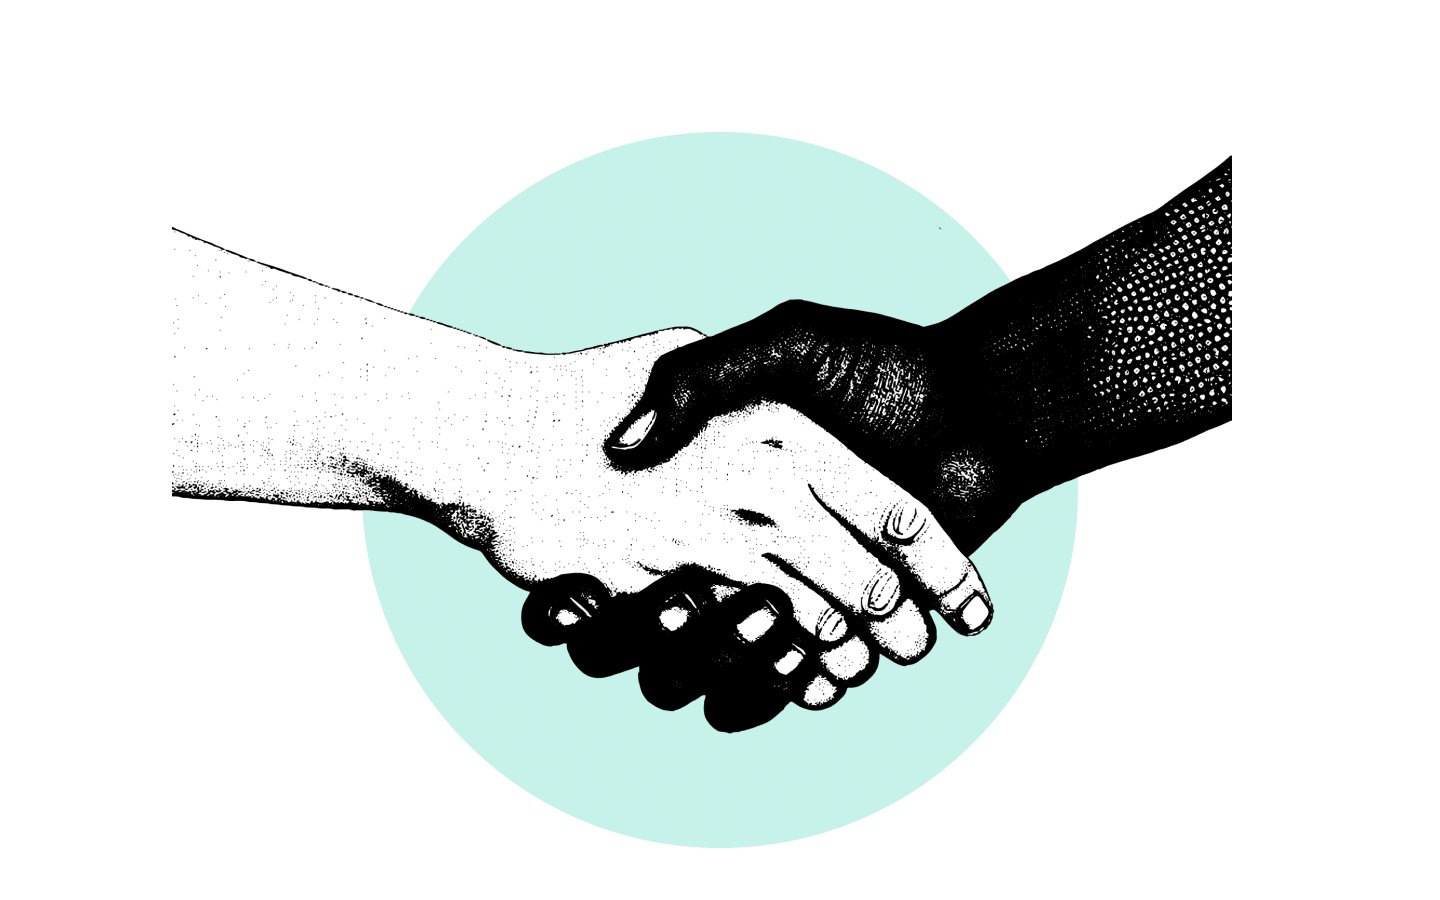 Two people handshaking